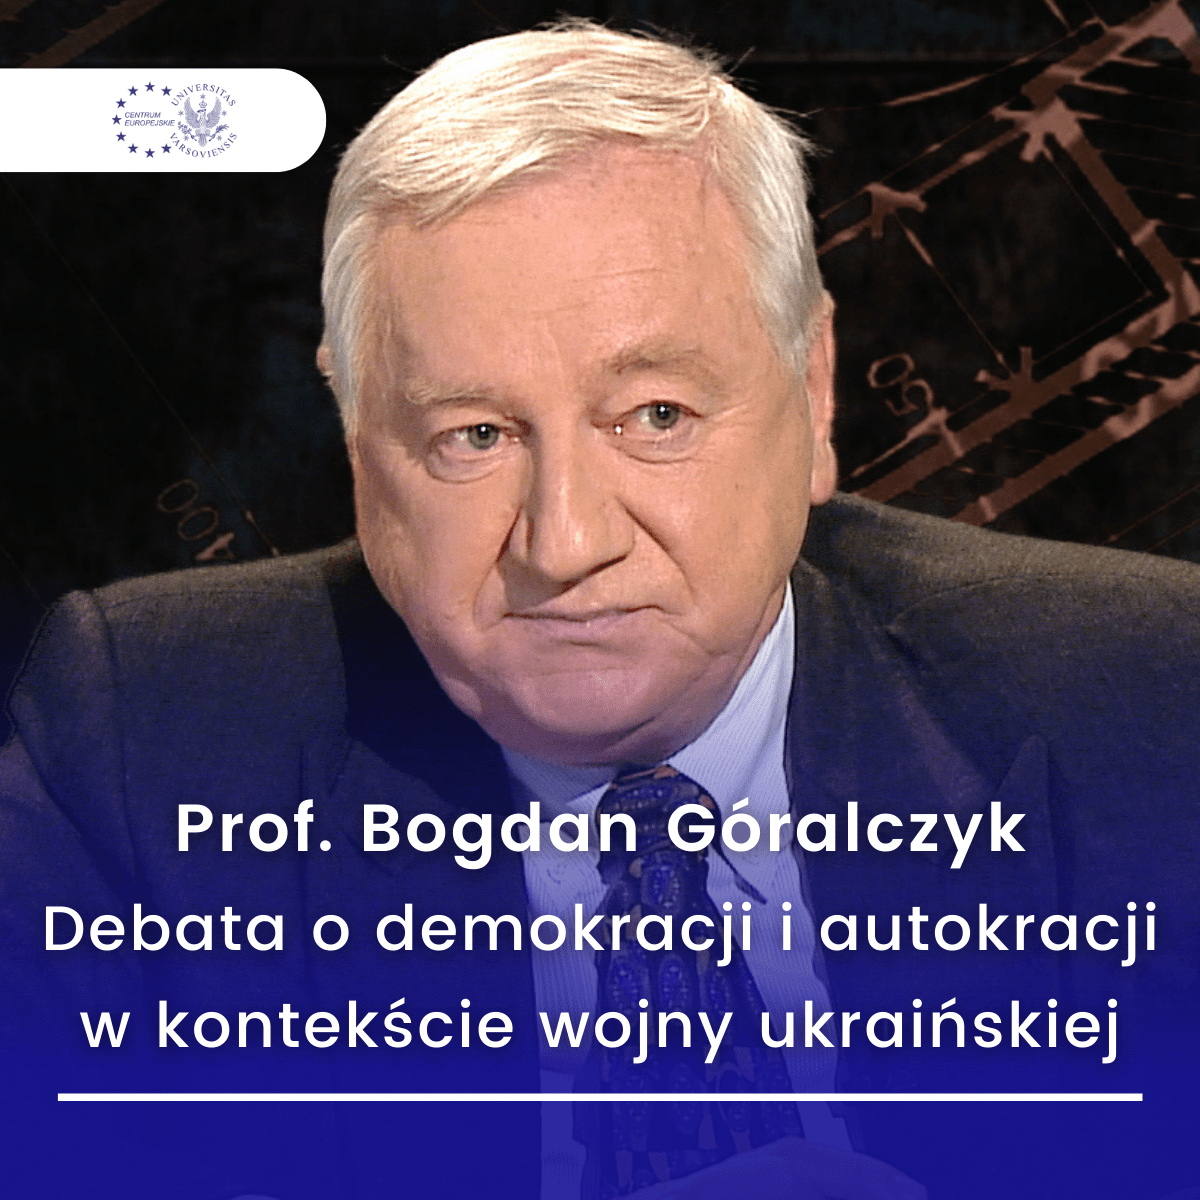 Prof. Bogdan Góralczyk   Debata O Demokracji I Autokracji W Kontekście Wojny Ukraińskiej